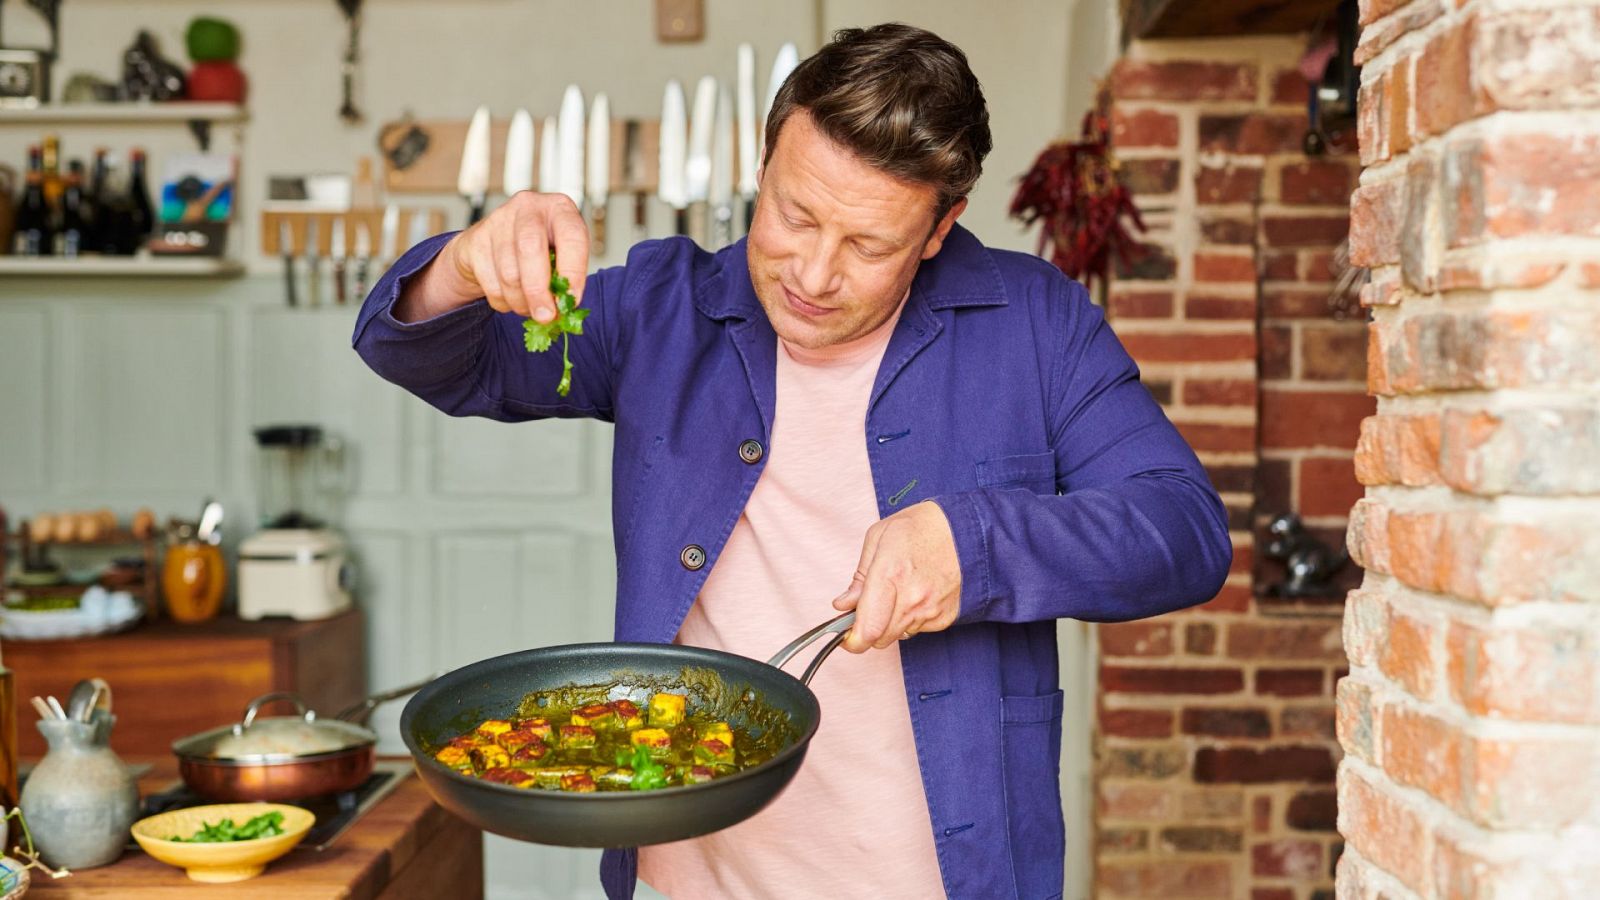 Jamie Oliver, juntos de nuevo - Episodio 5: Noche de curry - Documental en RTVe